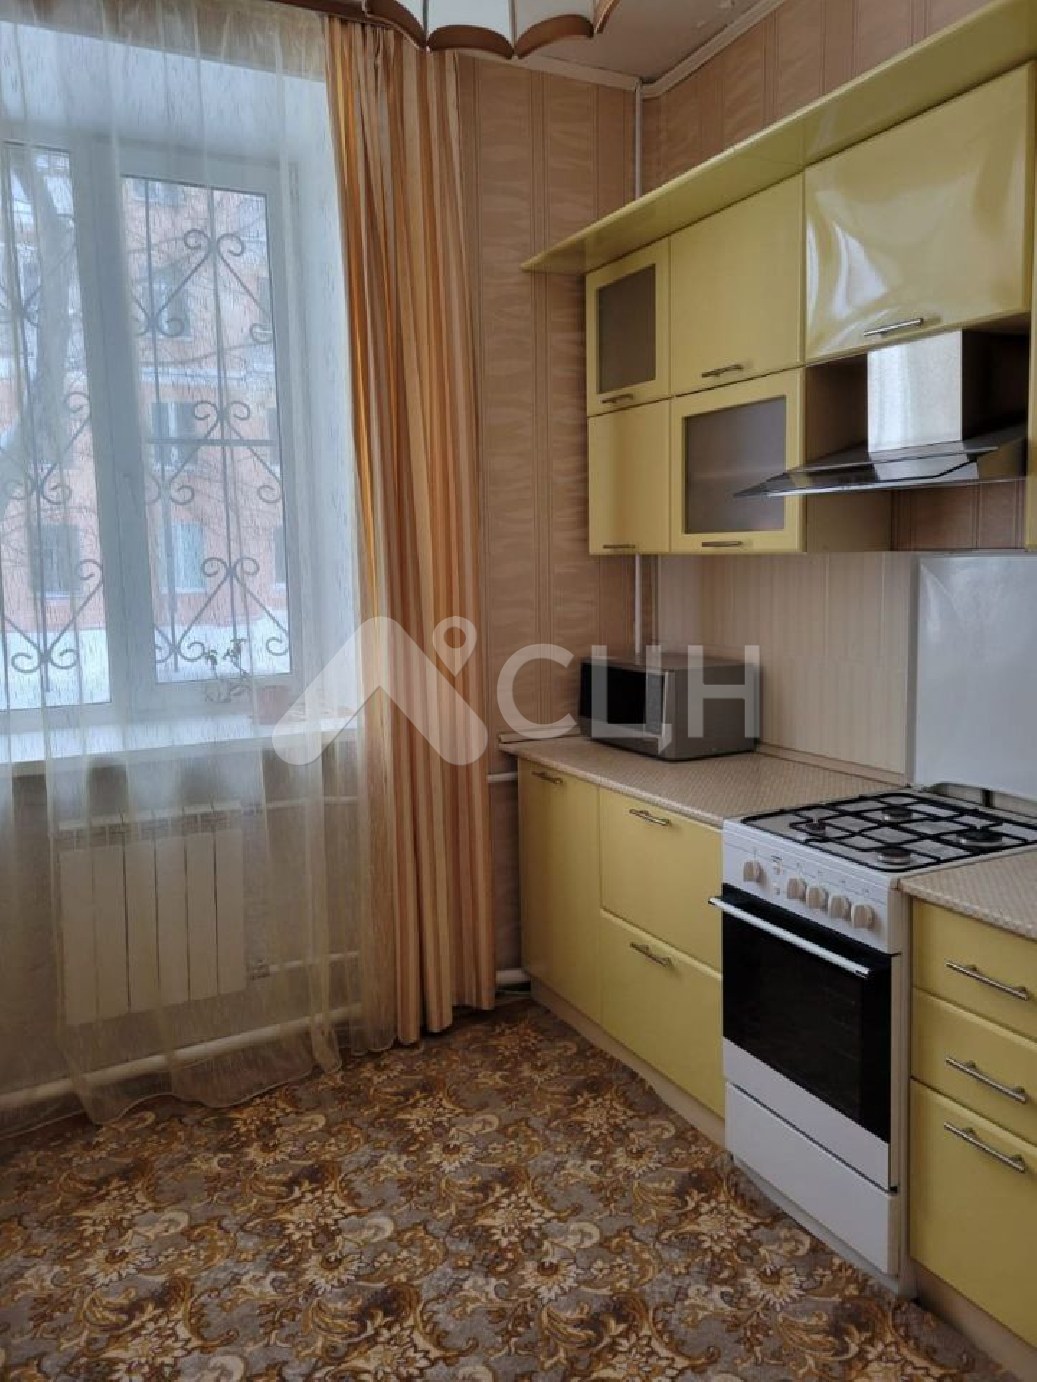 продажа домов саров
: Г. Саров, проспект Ленина, 8, 3-комн квартира, этаж 1 из 4, продажа.